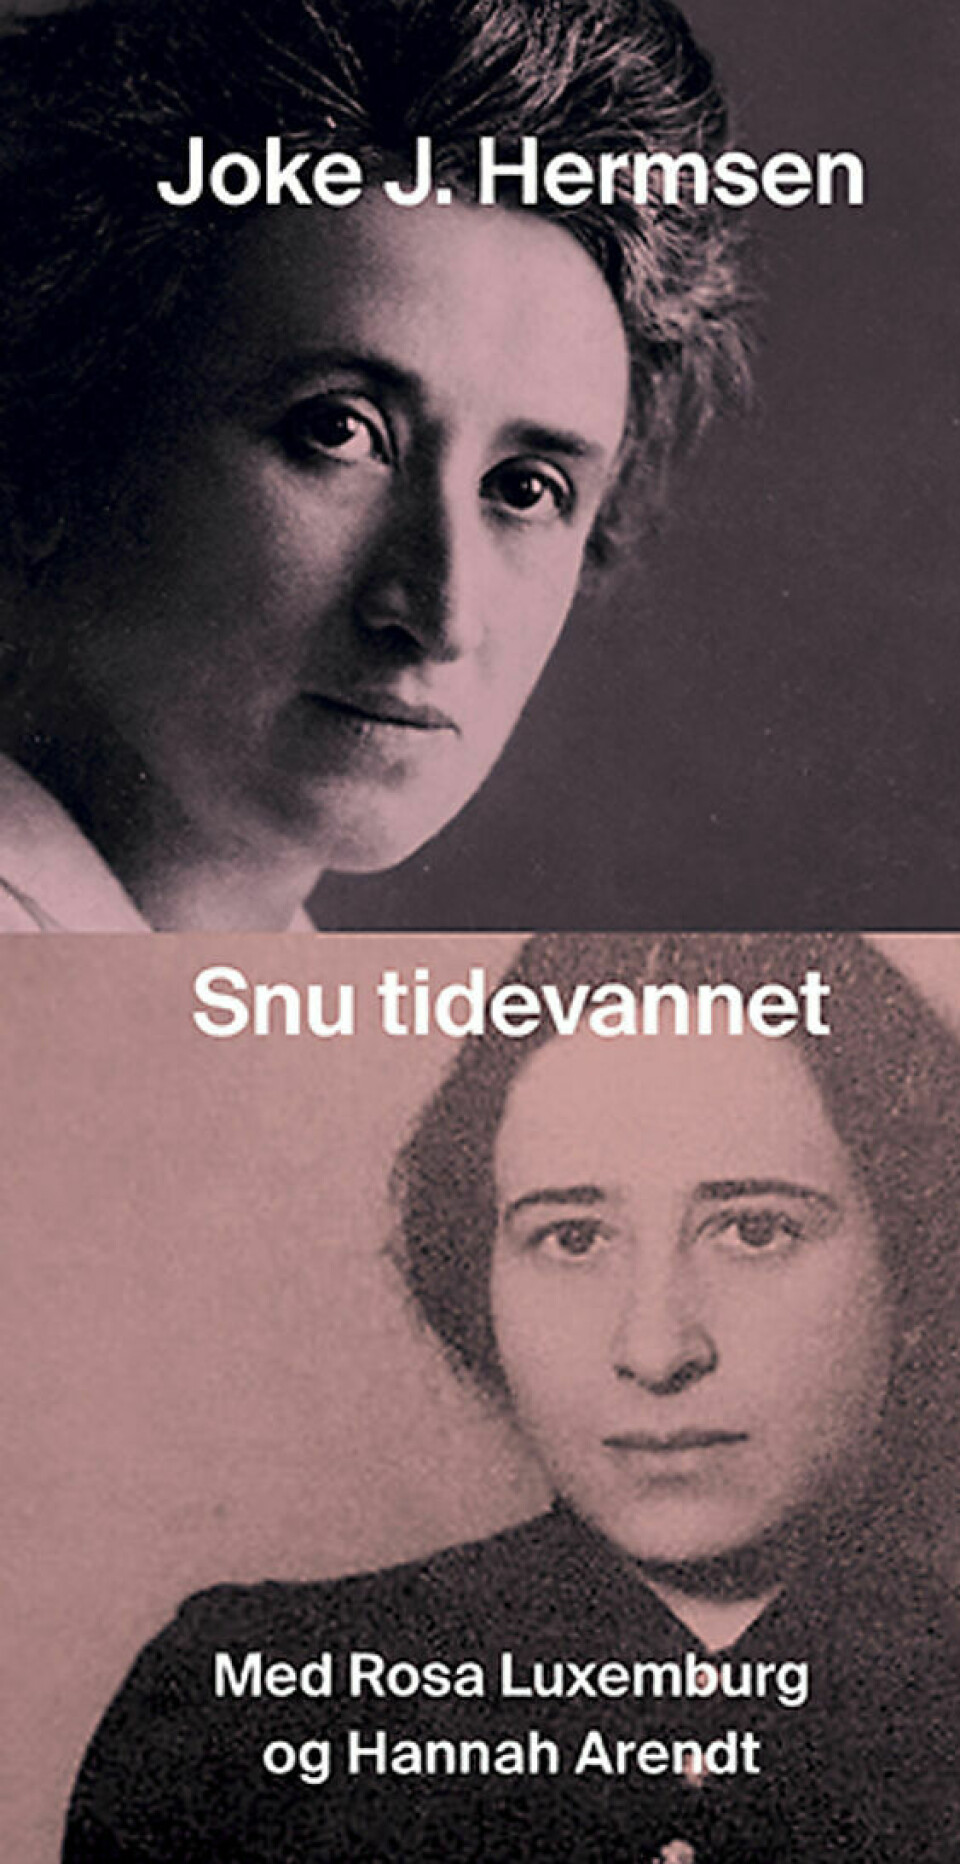 Snu tidevannet - med Rosa Luxemburg og Hannah Arendt ble utgitt på Existenz i 2022